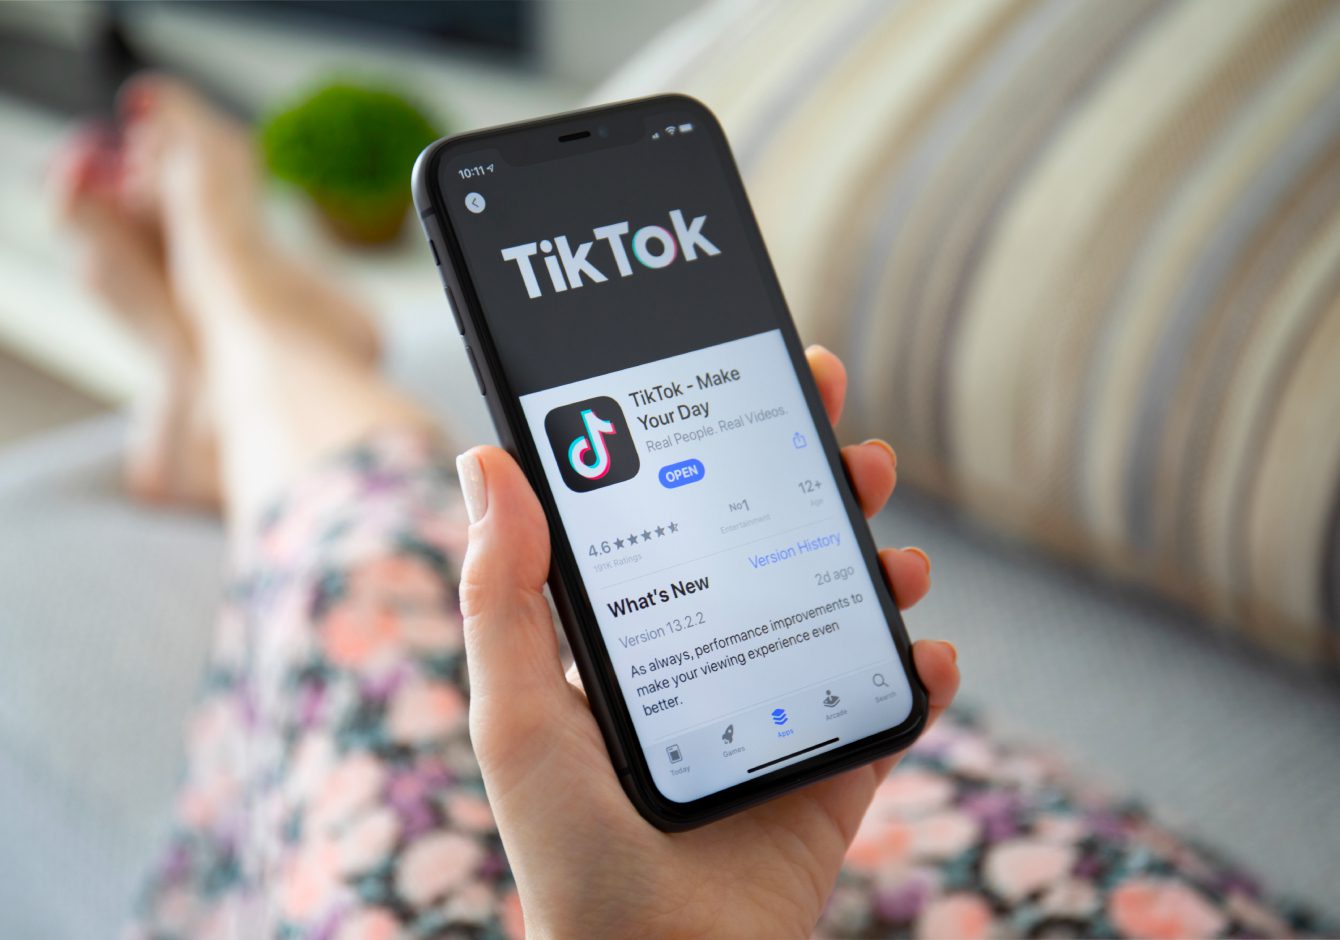 Woman using TikTok on smartphone